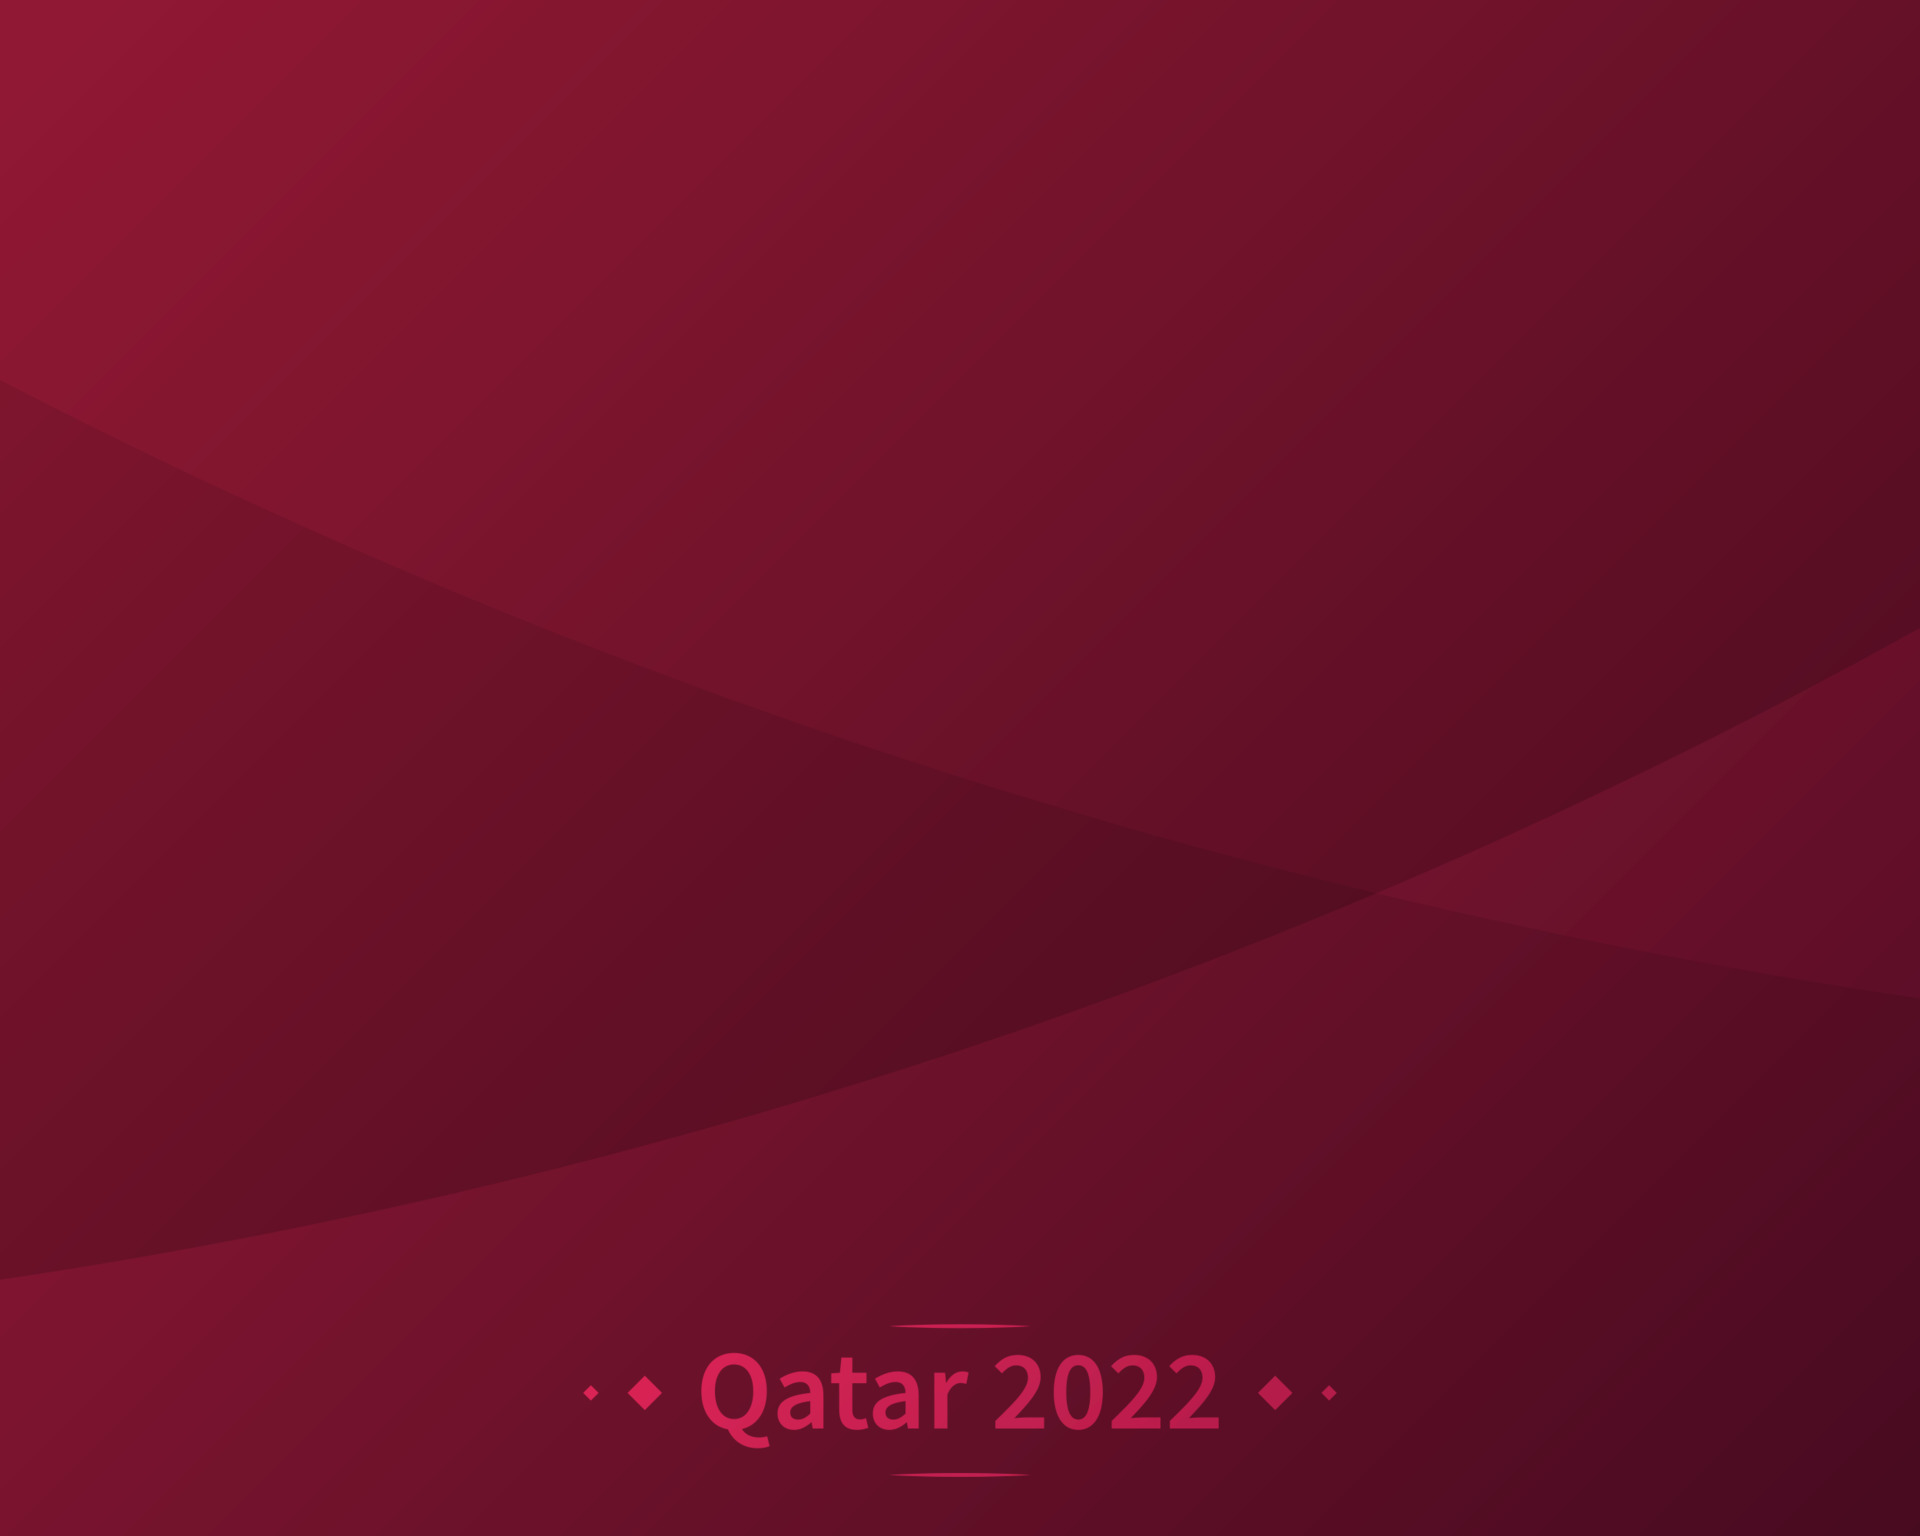 Cùng trở thành một người hâm mộ bóng đá đích thực bằng cách xem những hình ảnh về World Cup 2022 tại Qatar. Hãy để chúng tôi mang đến cho bạn những hình ảnh và thông tin mới nhất về giải đấu bóng đá hấp dẫn nhất thế giới này.